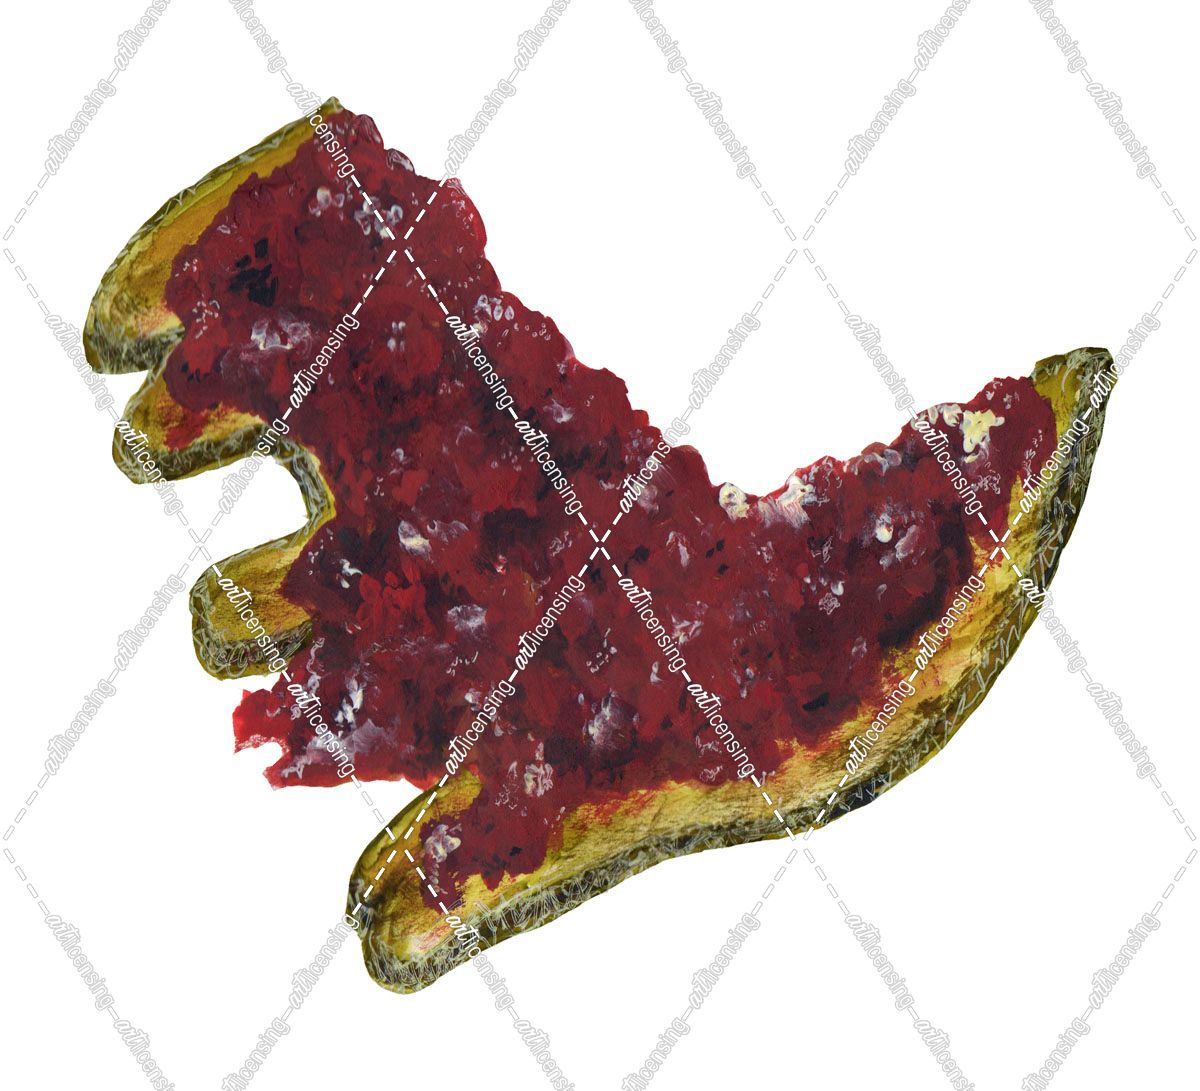 Dinosaur toast with strawberry jam